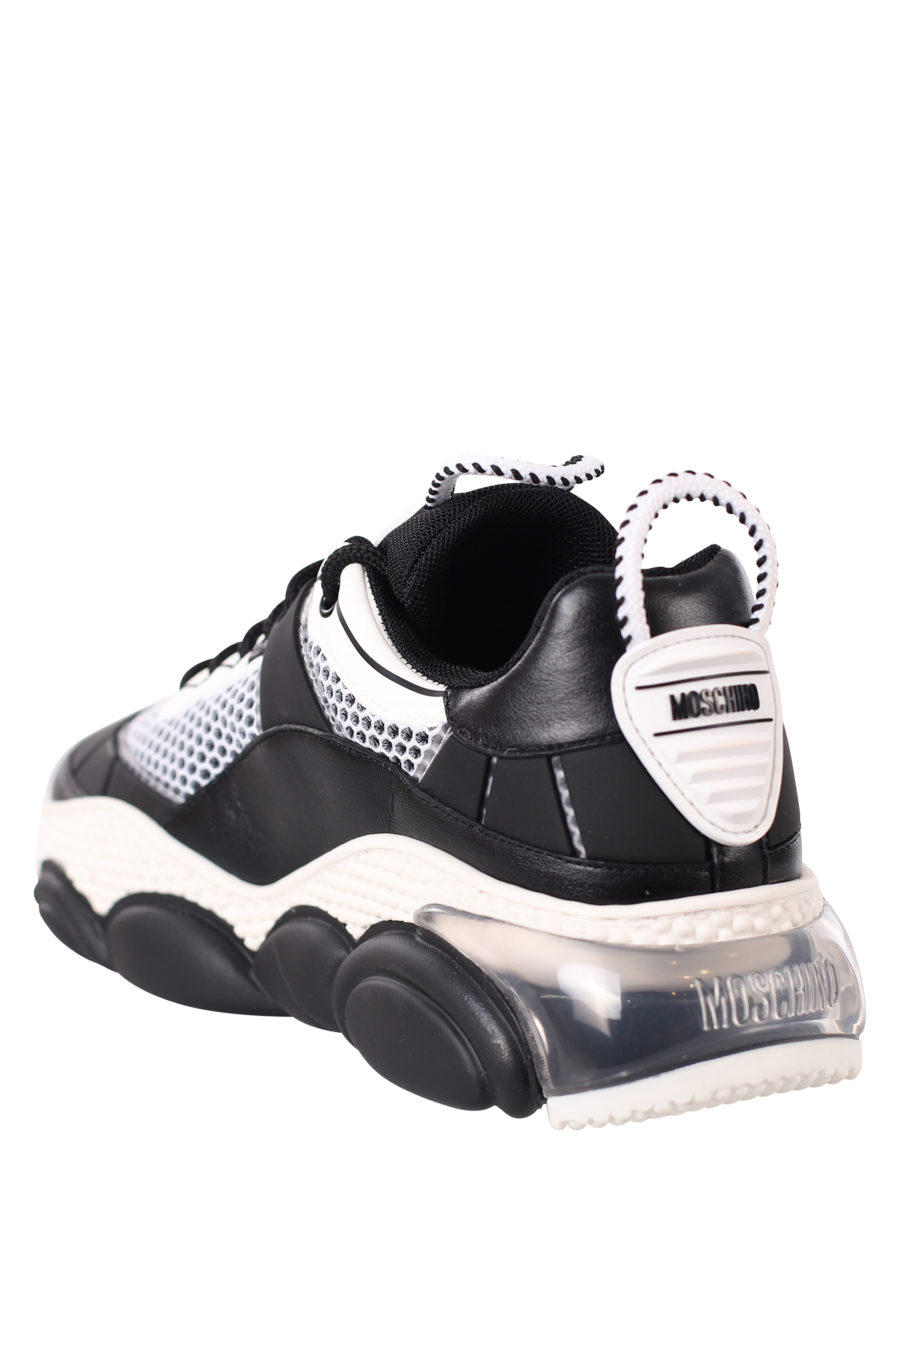 Zapatillas blancas y negras "Bolla 35" - IMG 0436